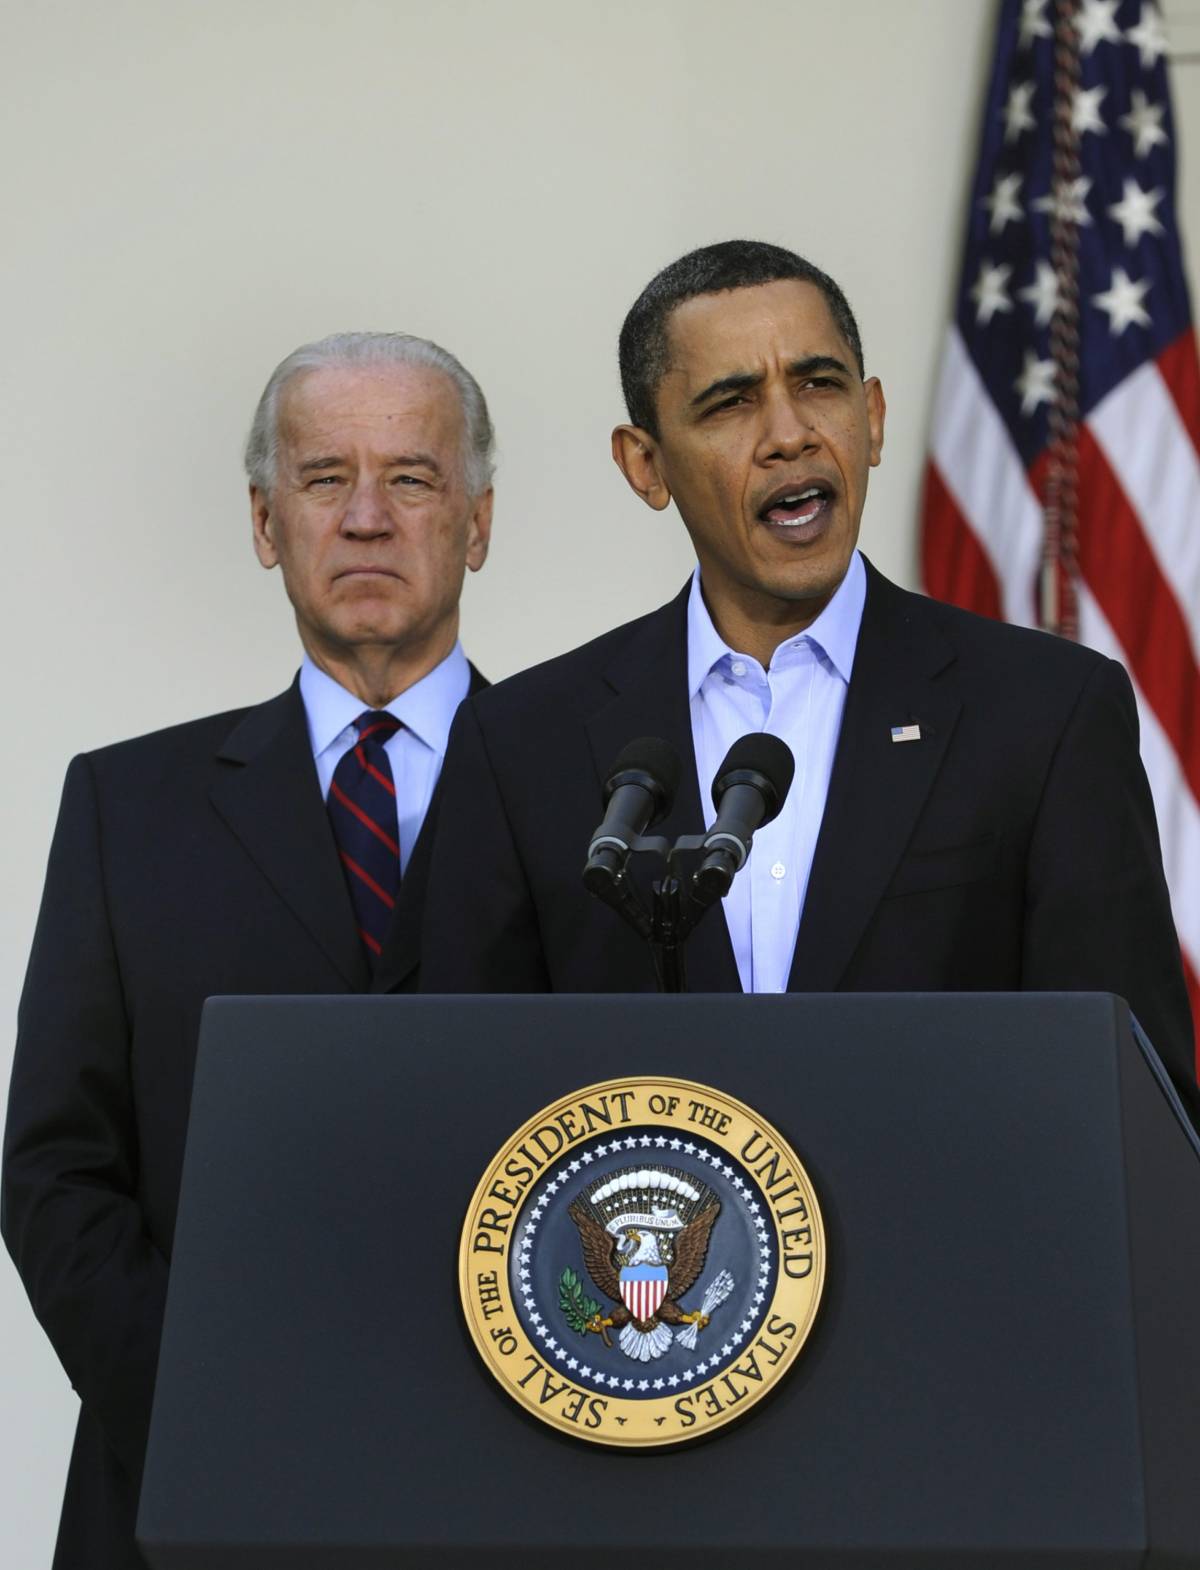 Obama: "Voto pietra miliare nella storia dell'Iraq"